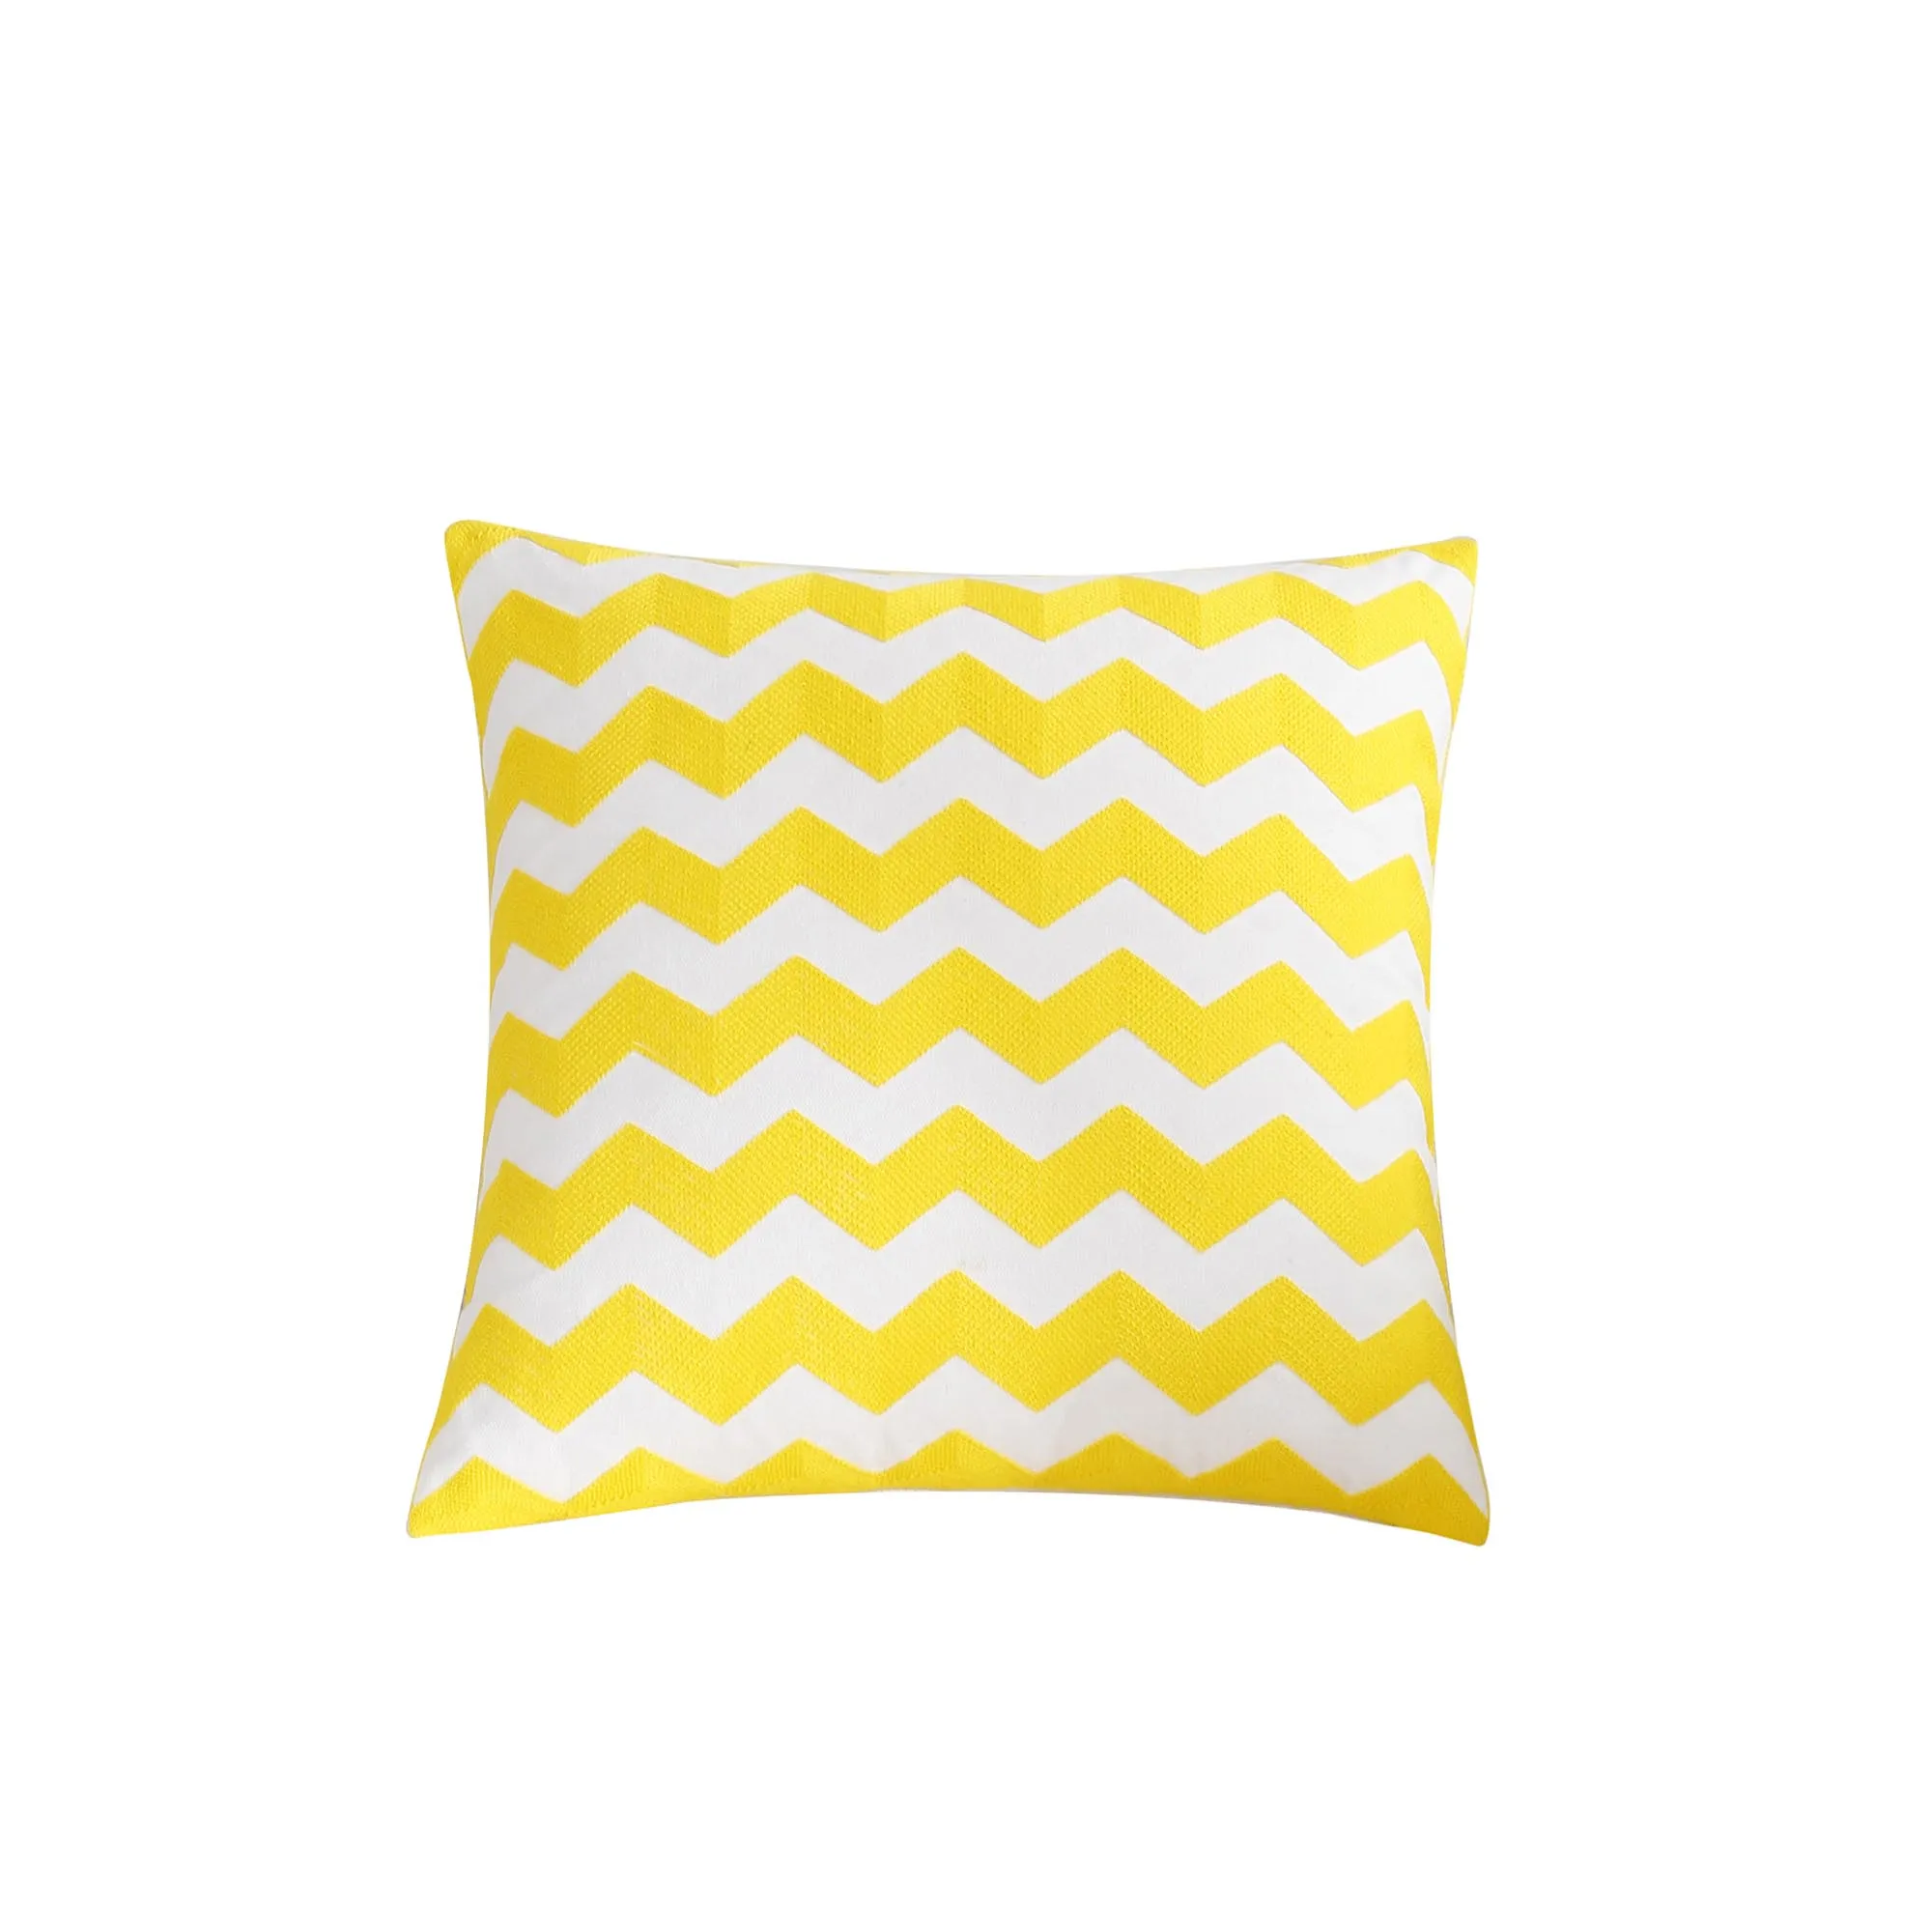 Толстый чехол для подушки в скандинавском стиле, желтый чехол для подушки с вышивкой и геометрическим рисунком 45 см* 45 см, чехол для подушки для дома и офиса, автомобильные подушки - Цвет: Yellow-1